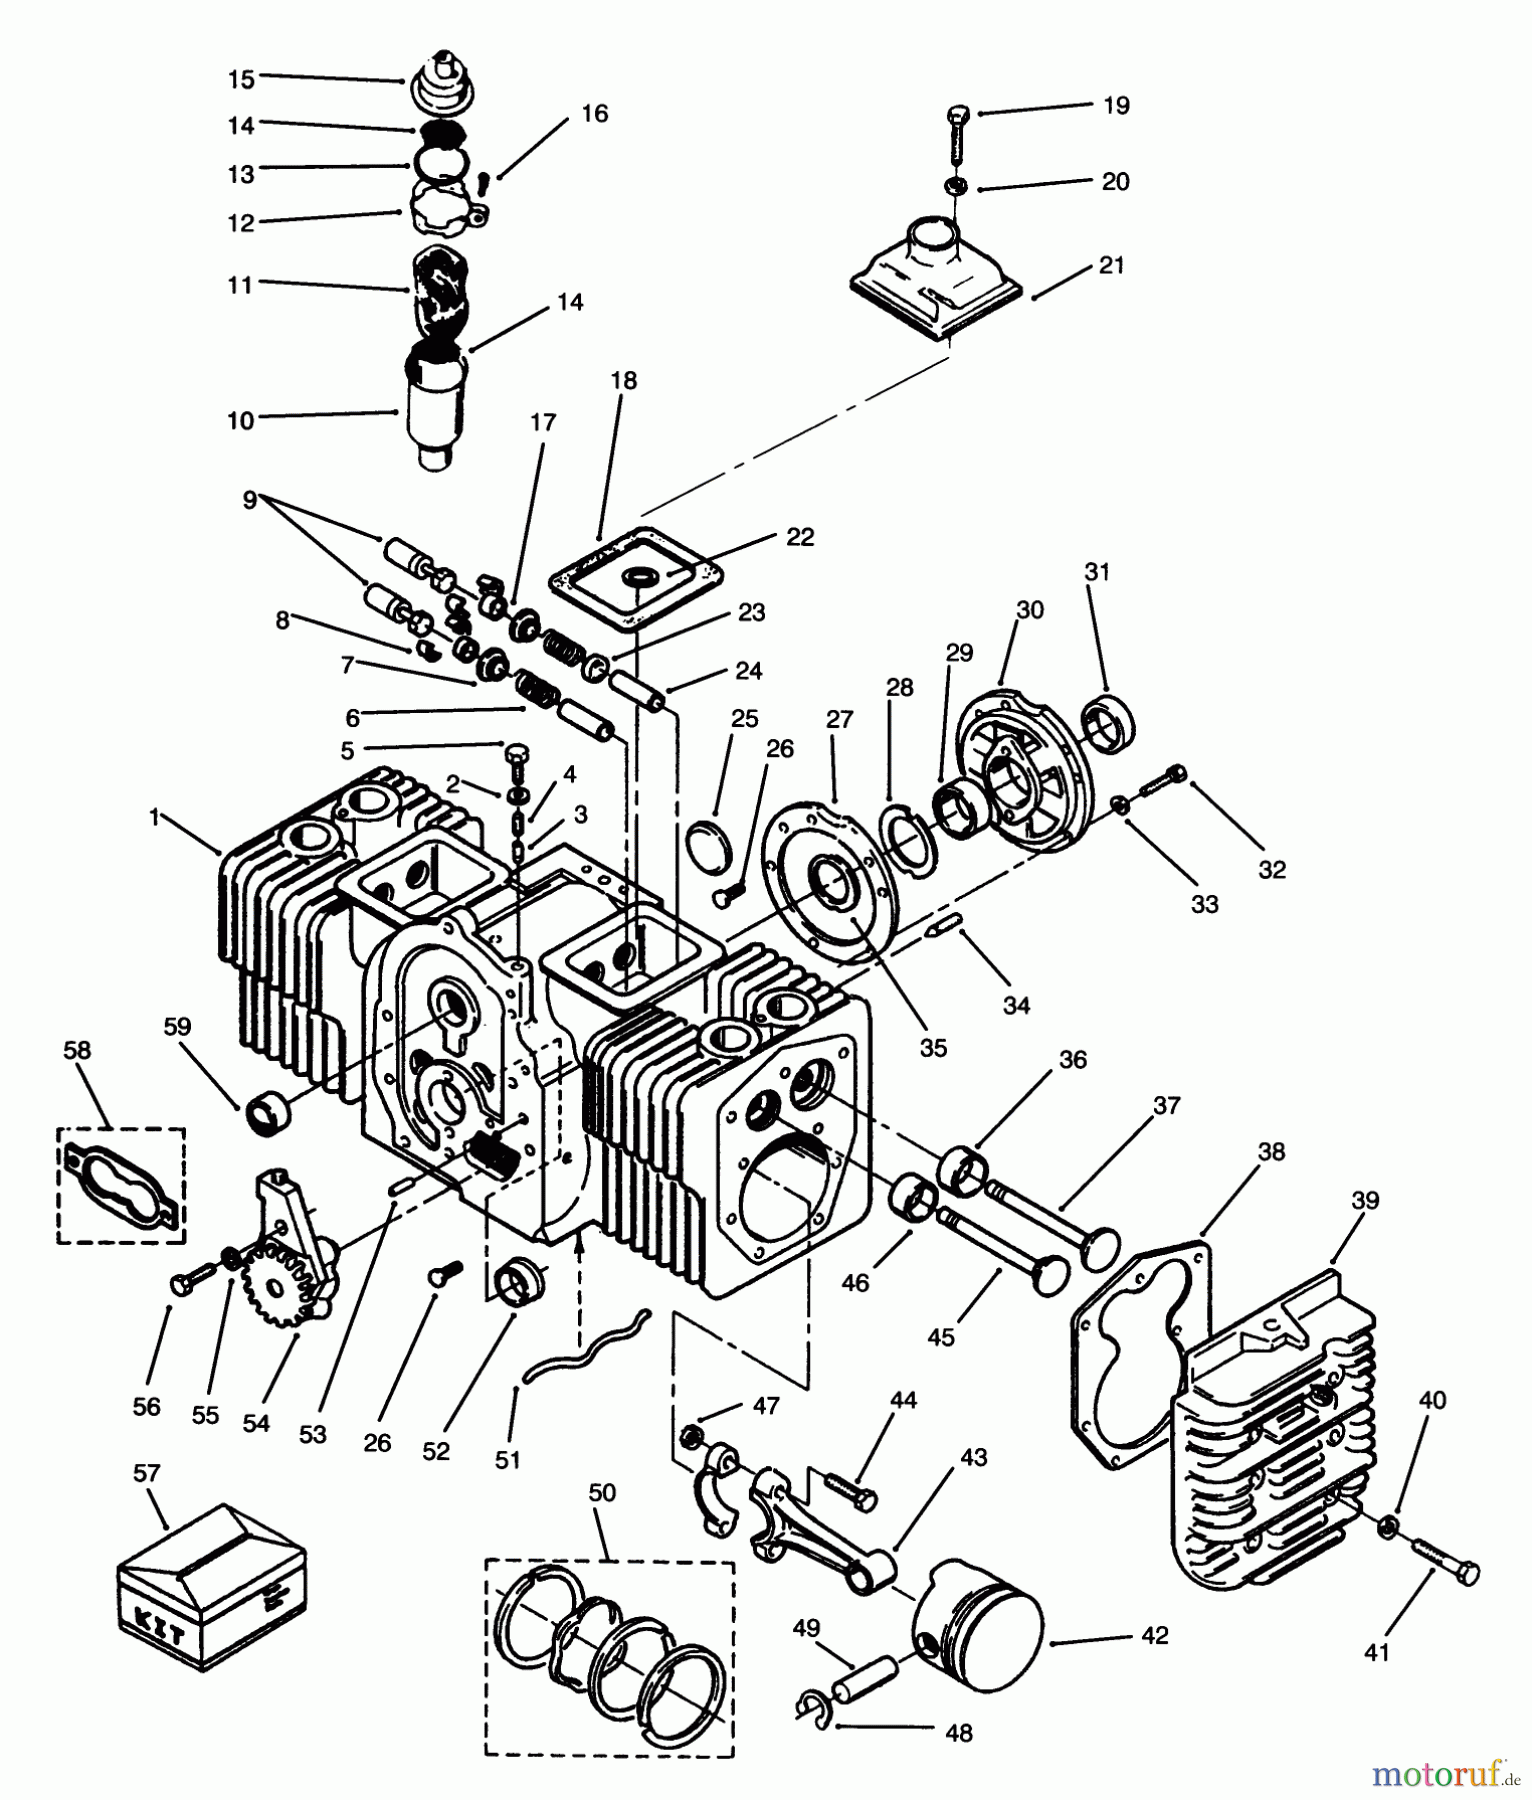  Toro Neu Mowers, Lawn & Garden Tractor Seite 1 73501 (520-H) - Toro 520-H Garden Tractor, 1994 (49000001-49999999) ENGINE CYLINDER BLOCK